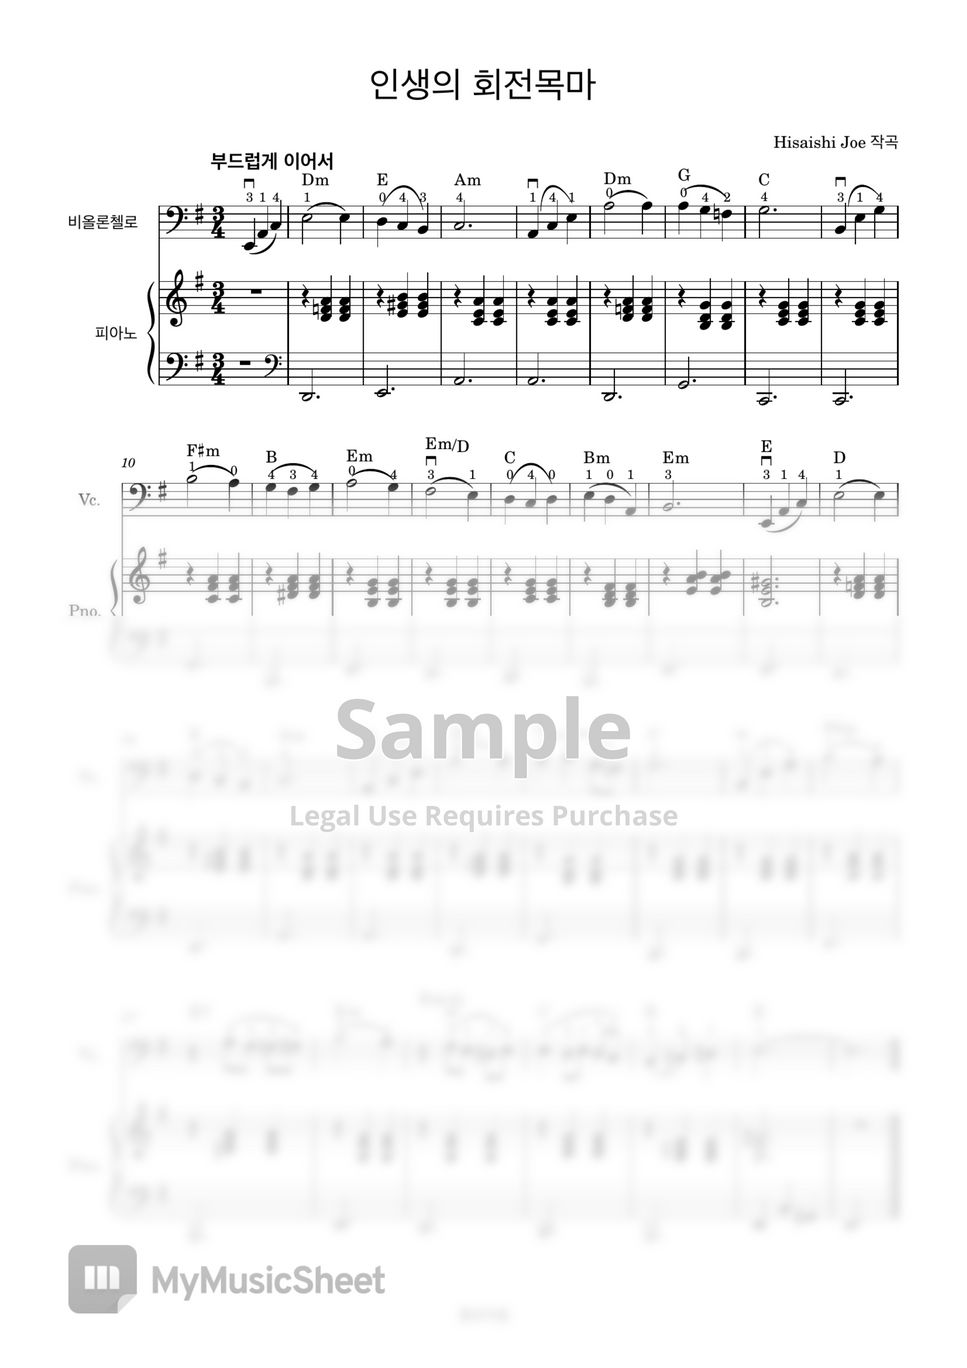 히사이시 조 - 인생의 회전목마 (첼로+피아노, 가사 & 손가락 번호 포함) by 첼로마을